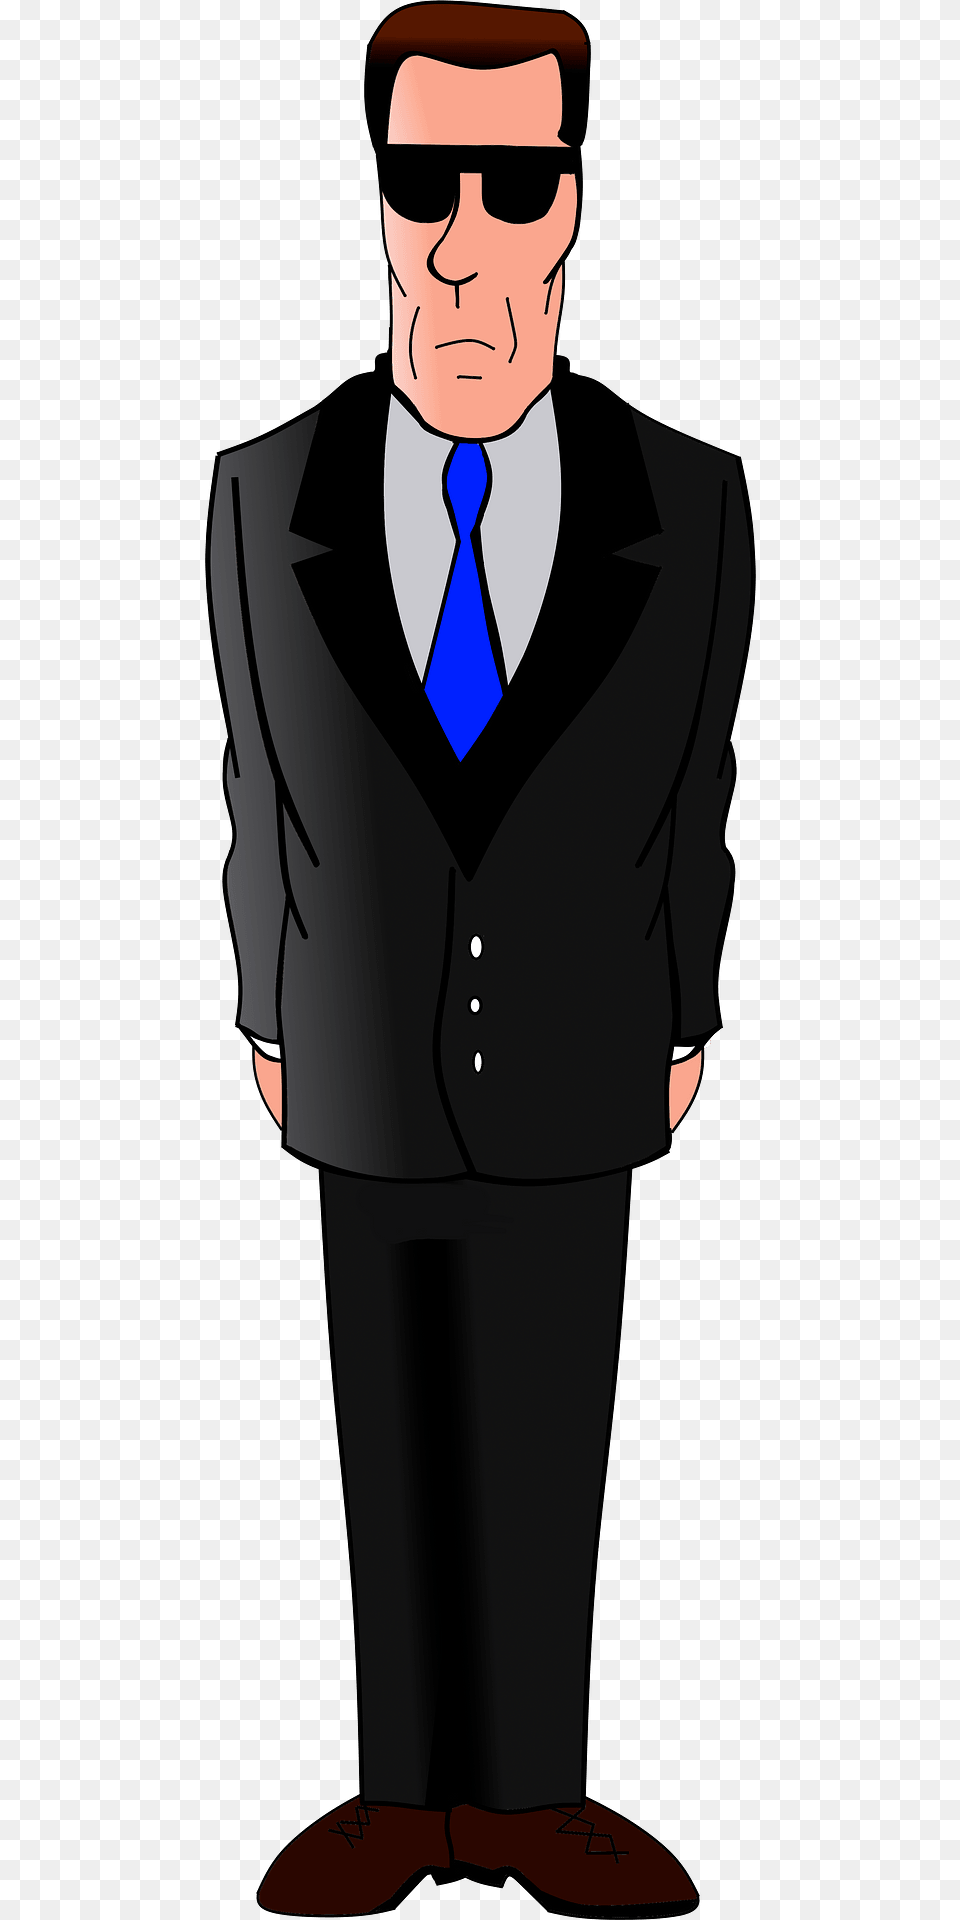 Secret Agent Clipart, Accessories, Tie, Suit, Tuxedo Free Transparent Png